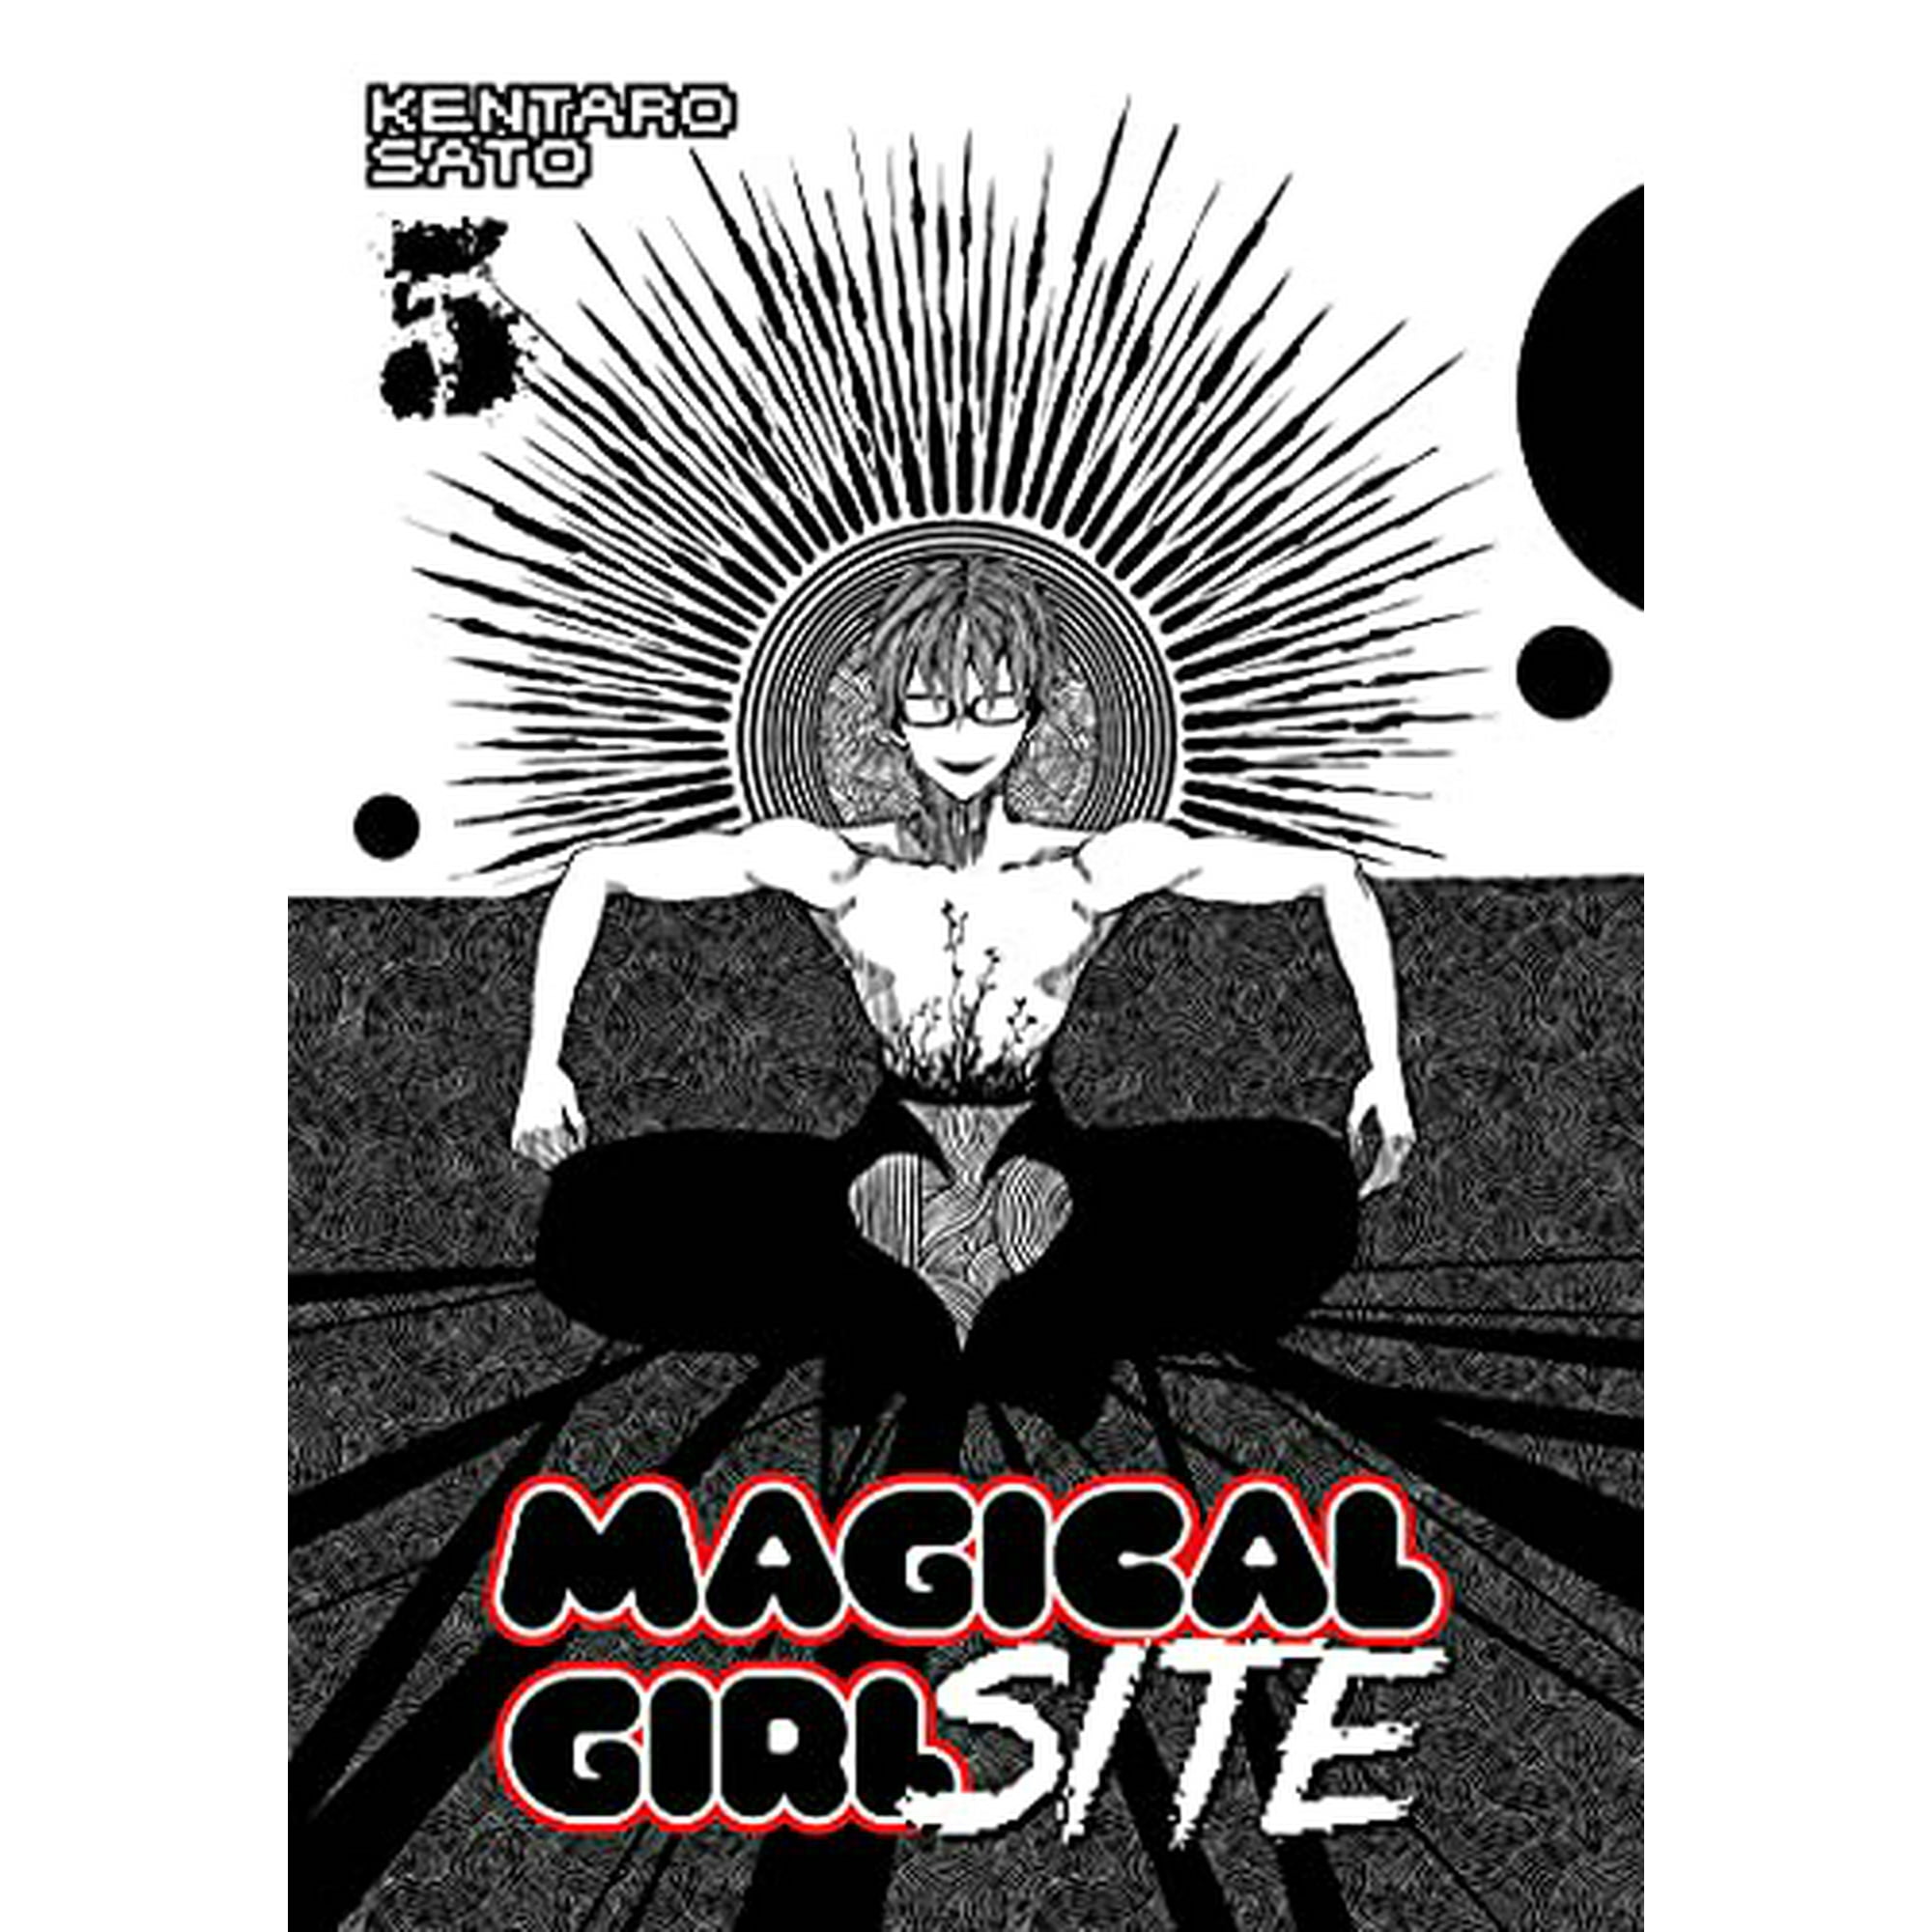 Magical Girl Site Vol. 5 by Kentaro Sato: 9781626926905